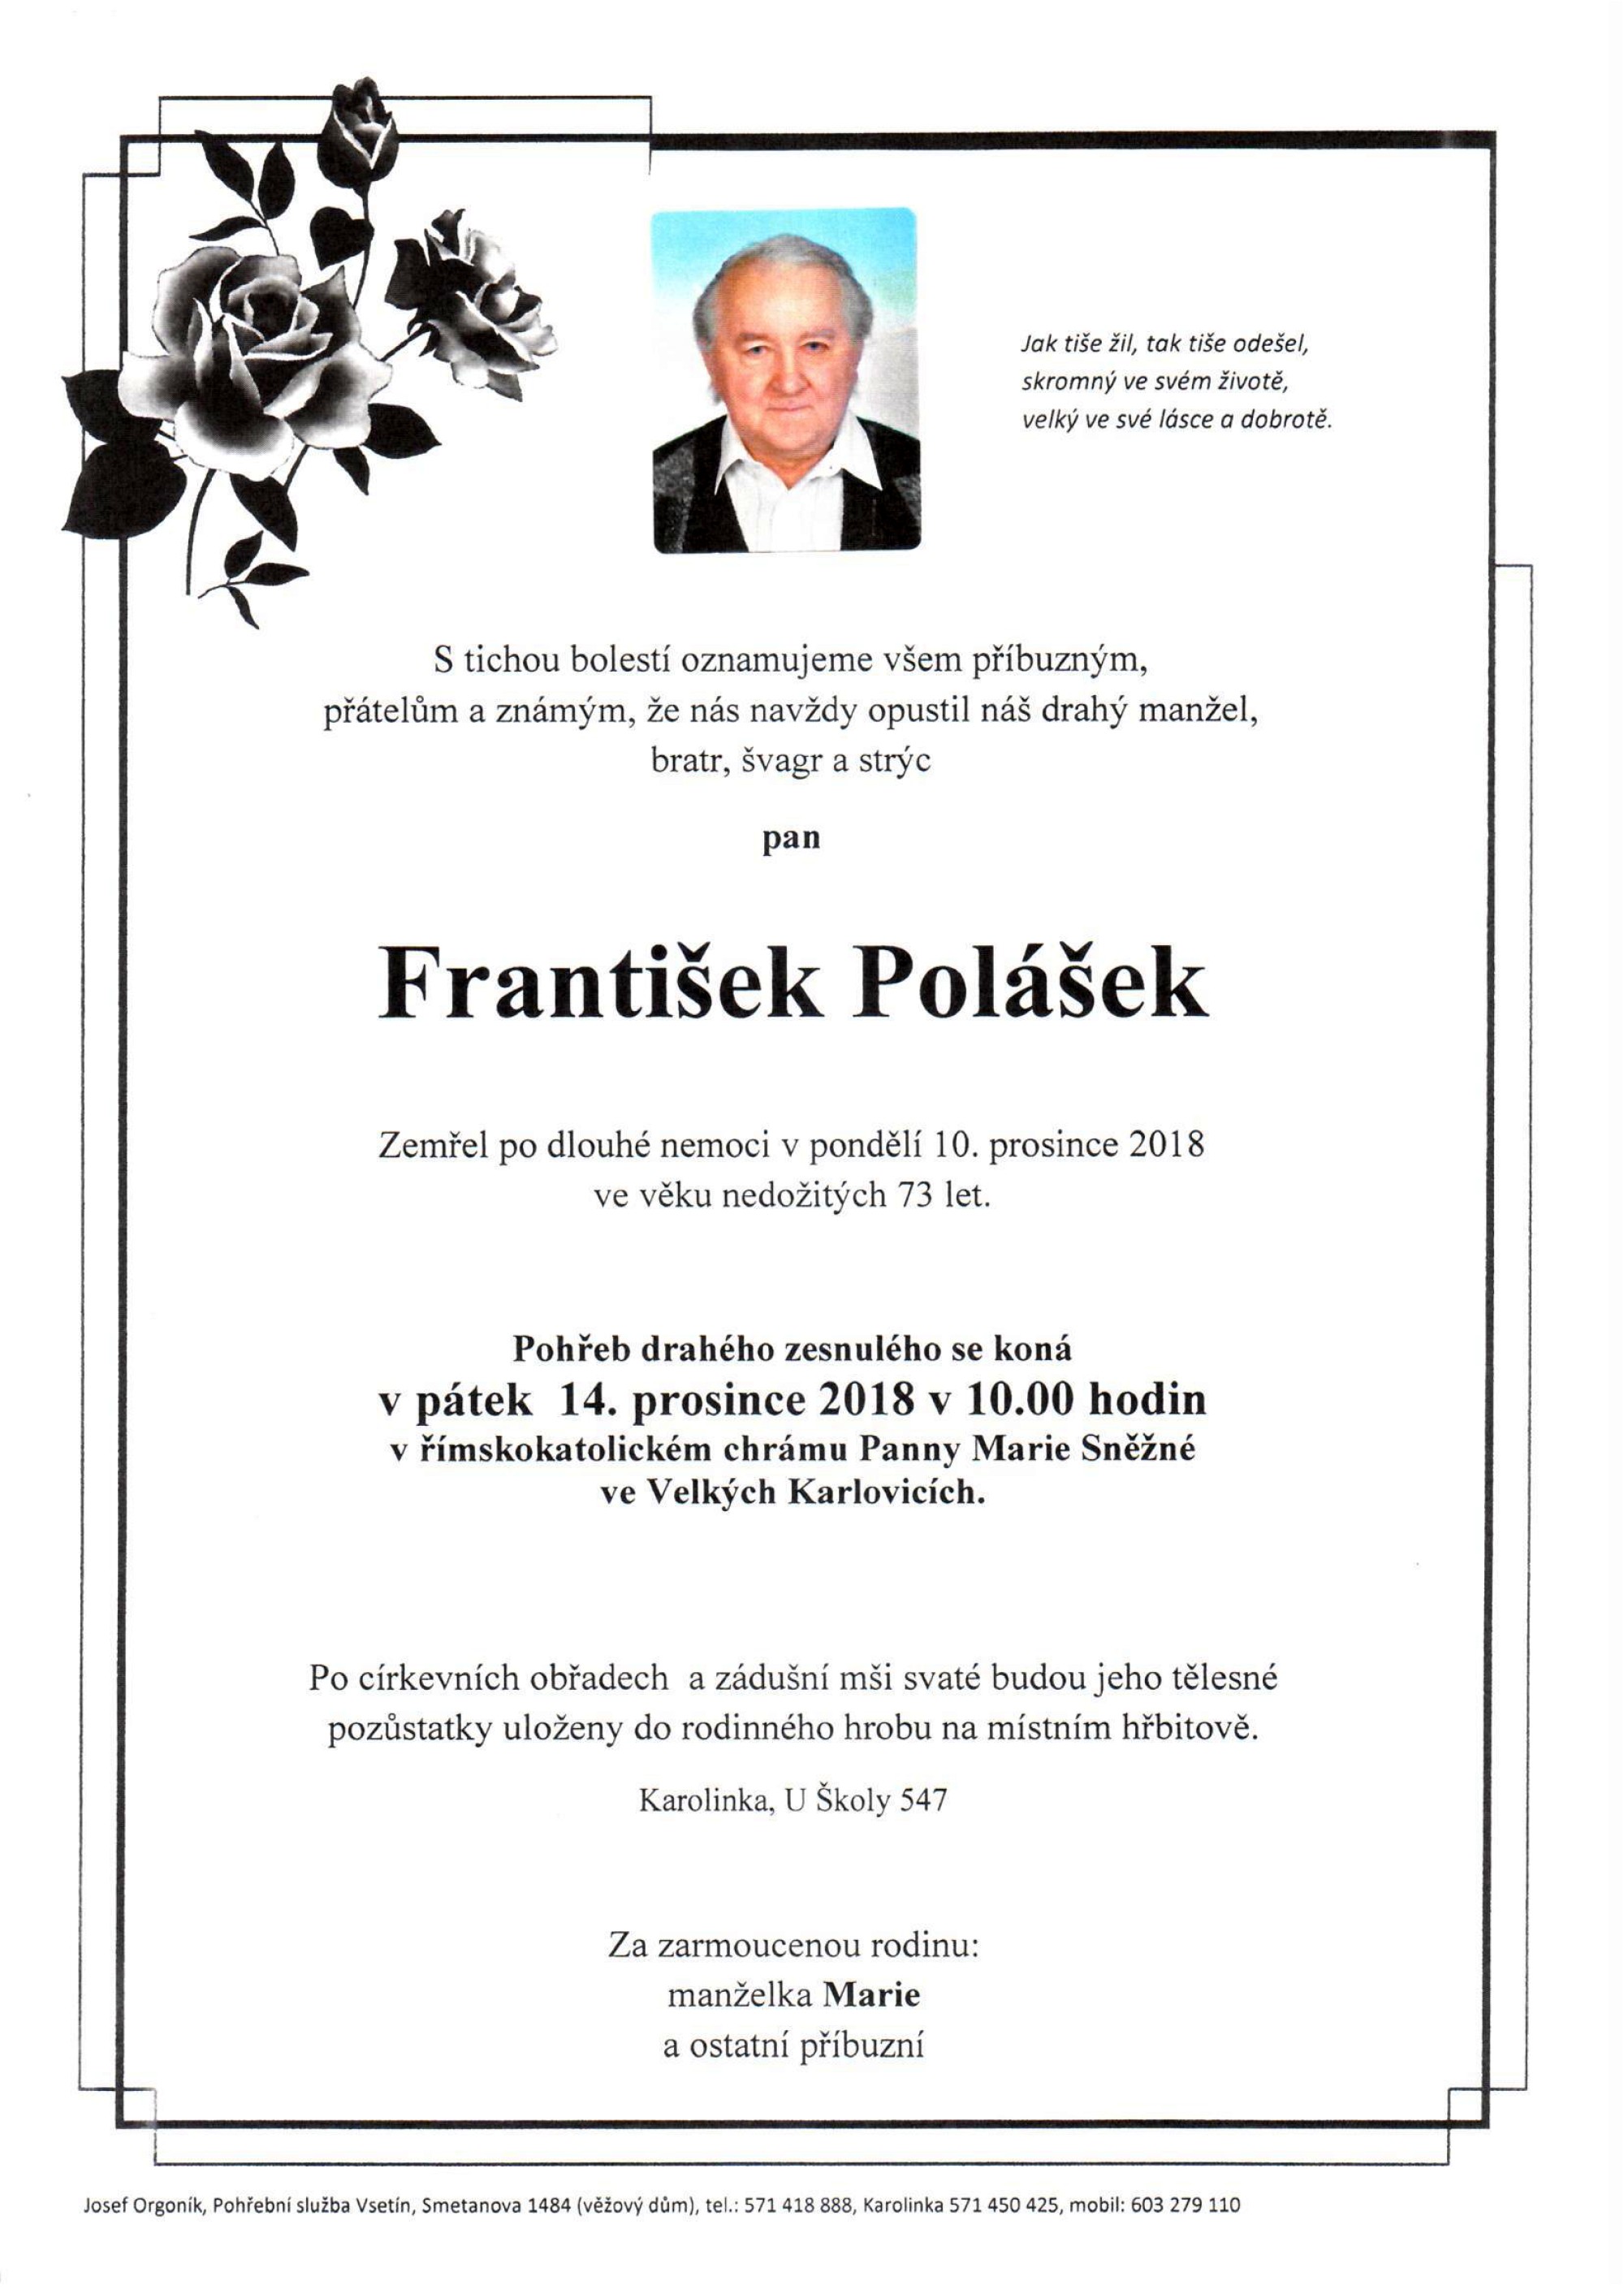 František Polášek